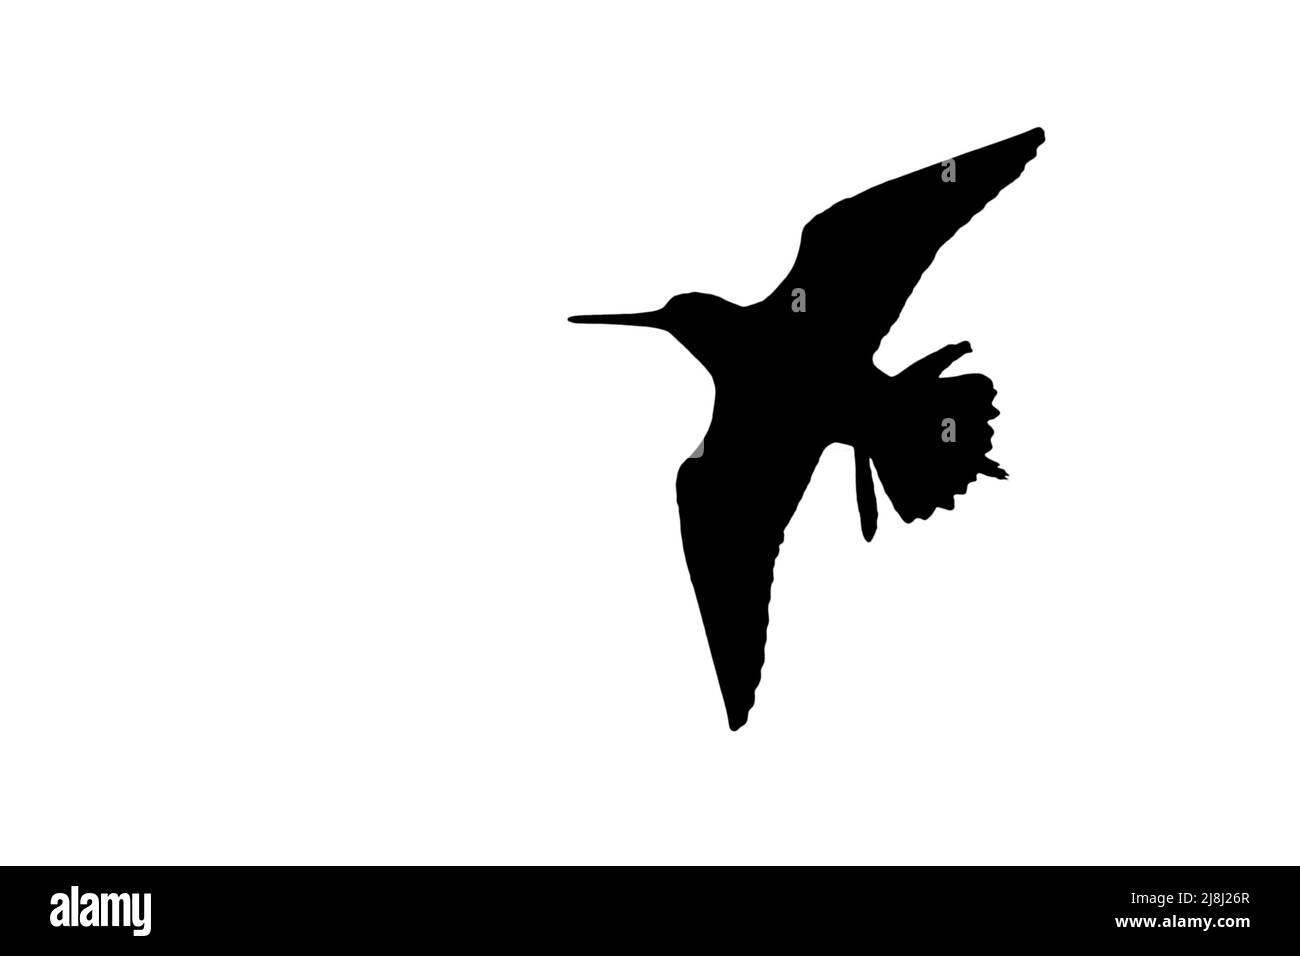 Silhouette de bécassine commune (Gallinago gallinago) en vol entourée d'un fond blanc pour montrer les formes des ailes, de la tête et de la queue Banque D'Images